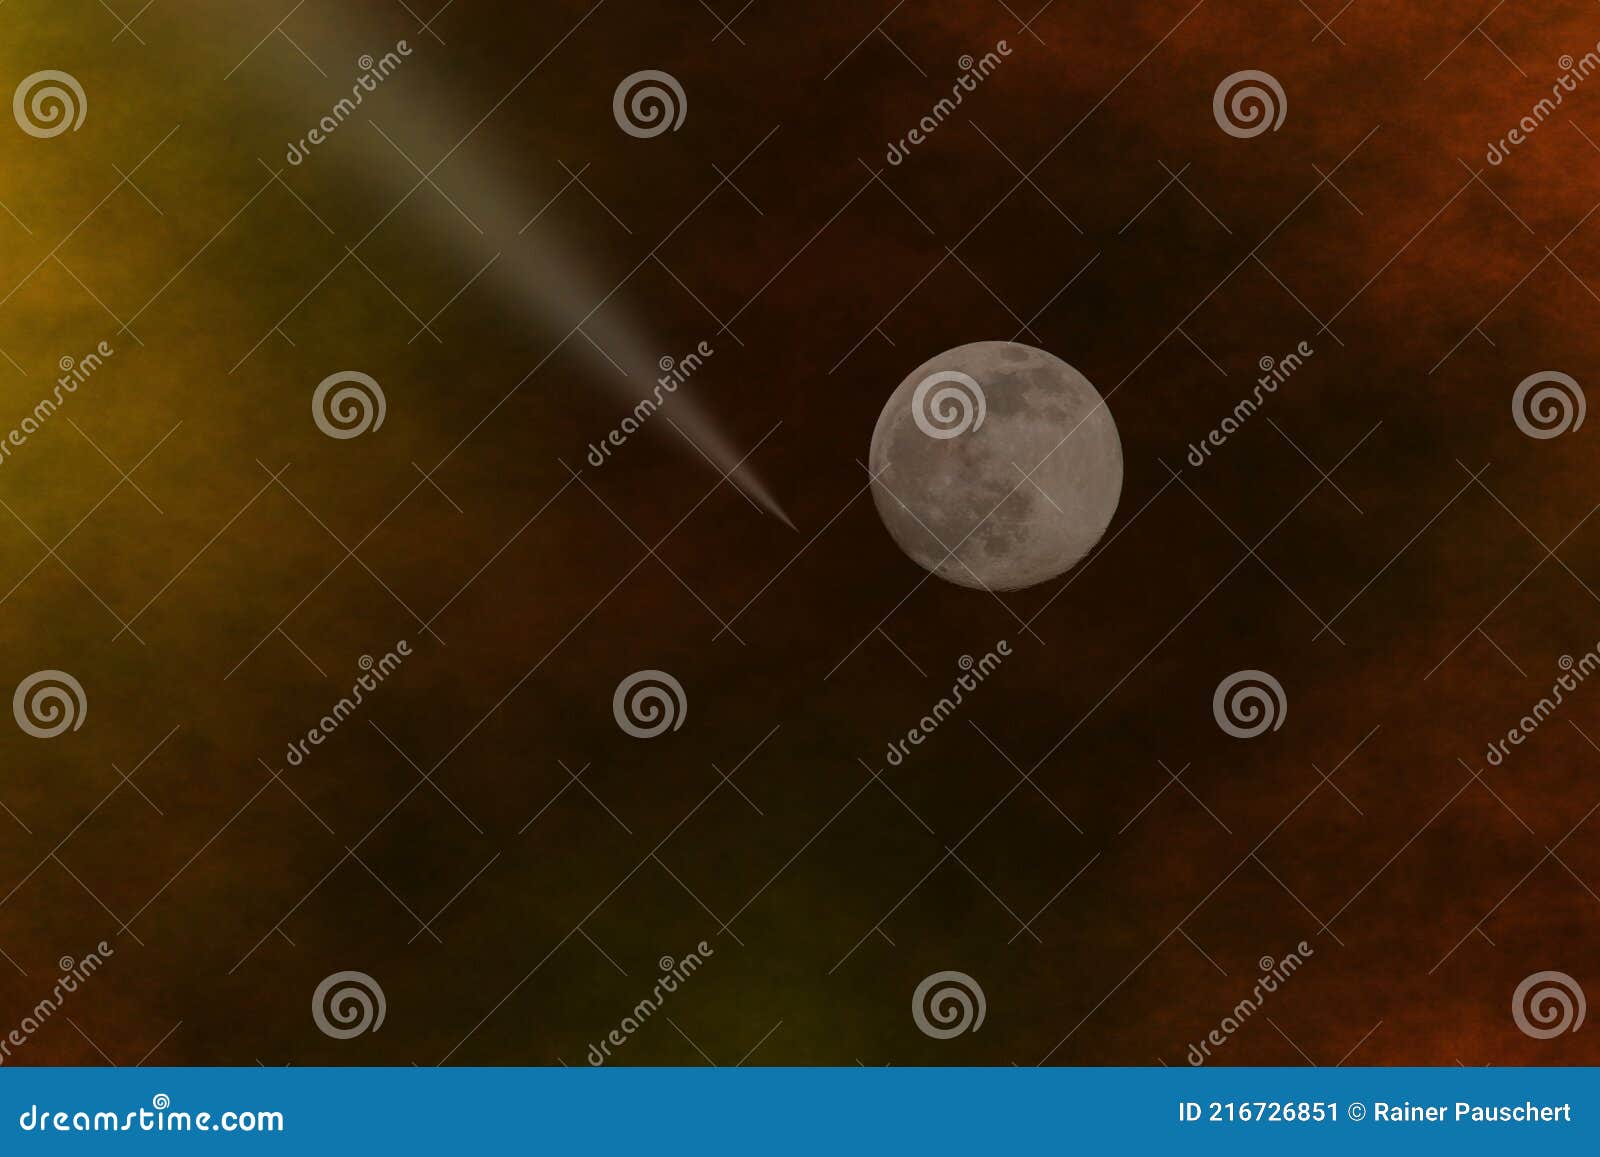 Luna Llena Delante De Un Fondo Naranja Imagen de archivo - Imagen de ...